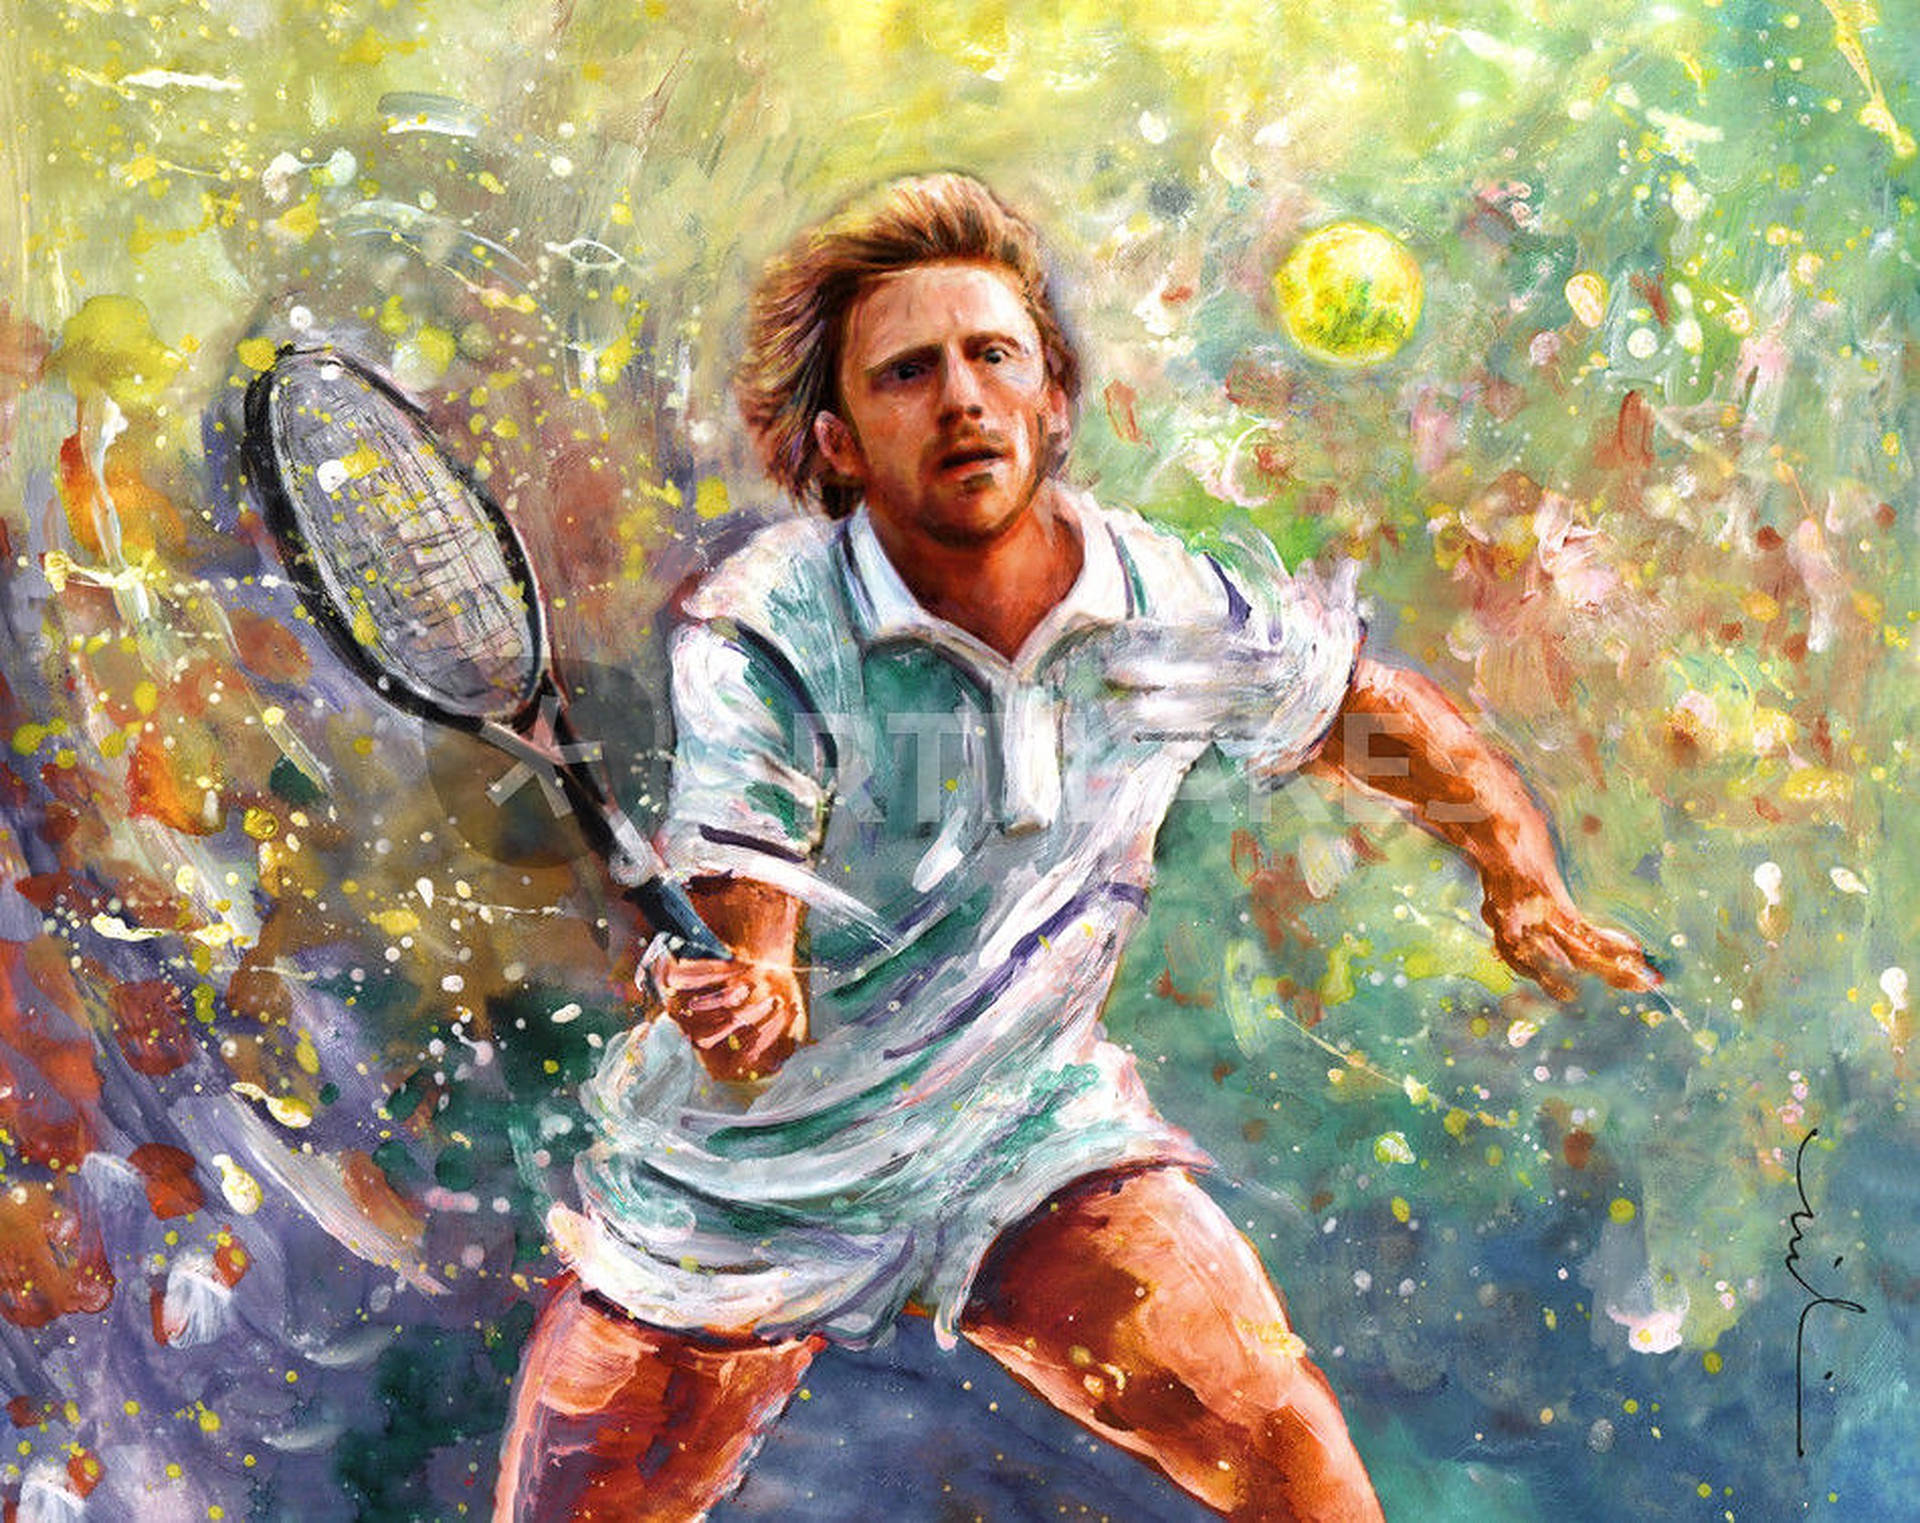 Tennis Legend Boris Becker's Powerful Forehand